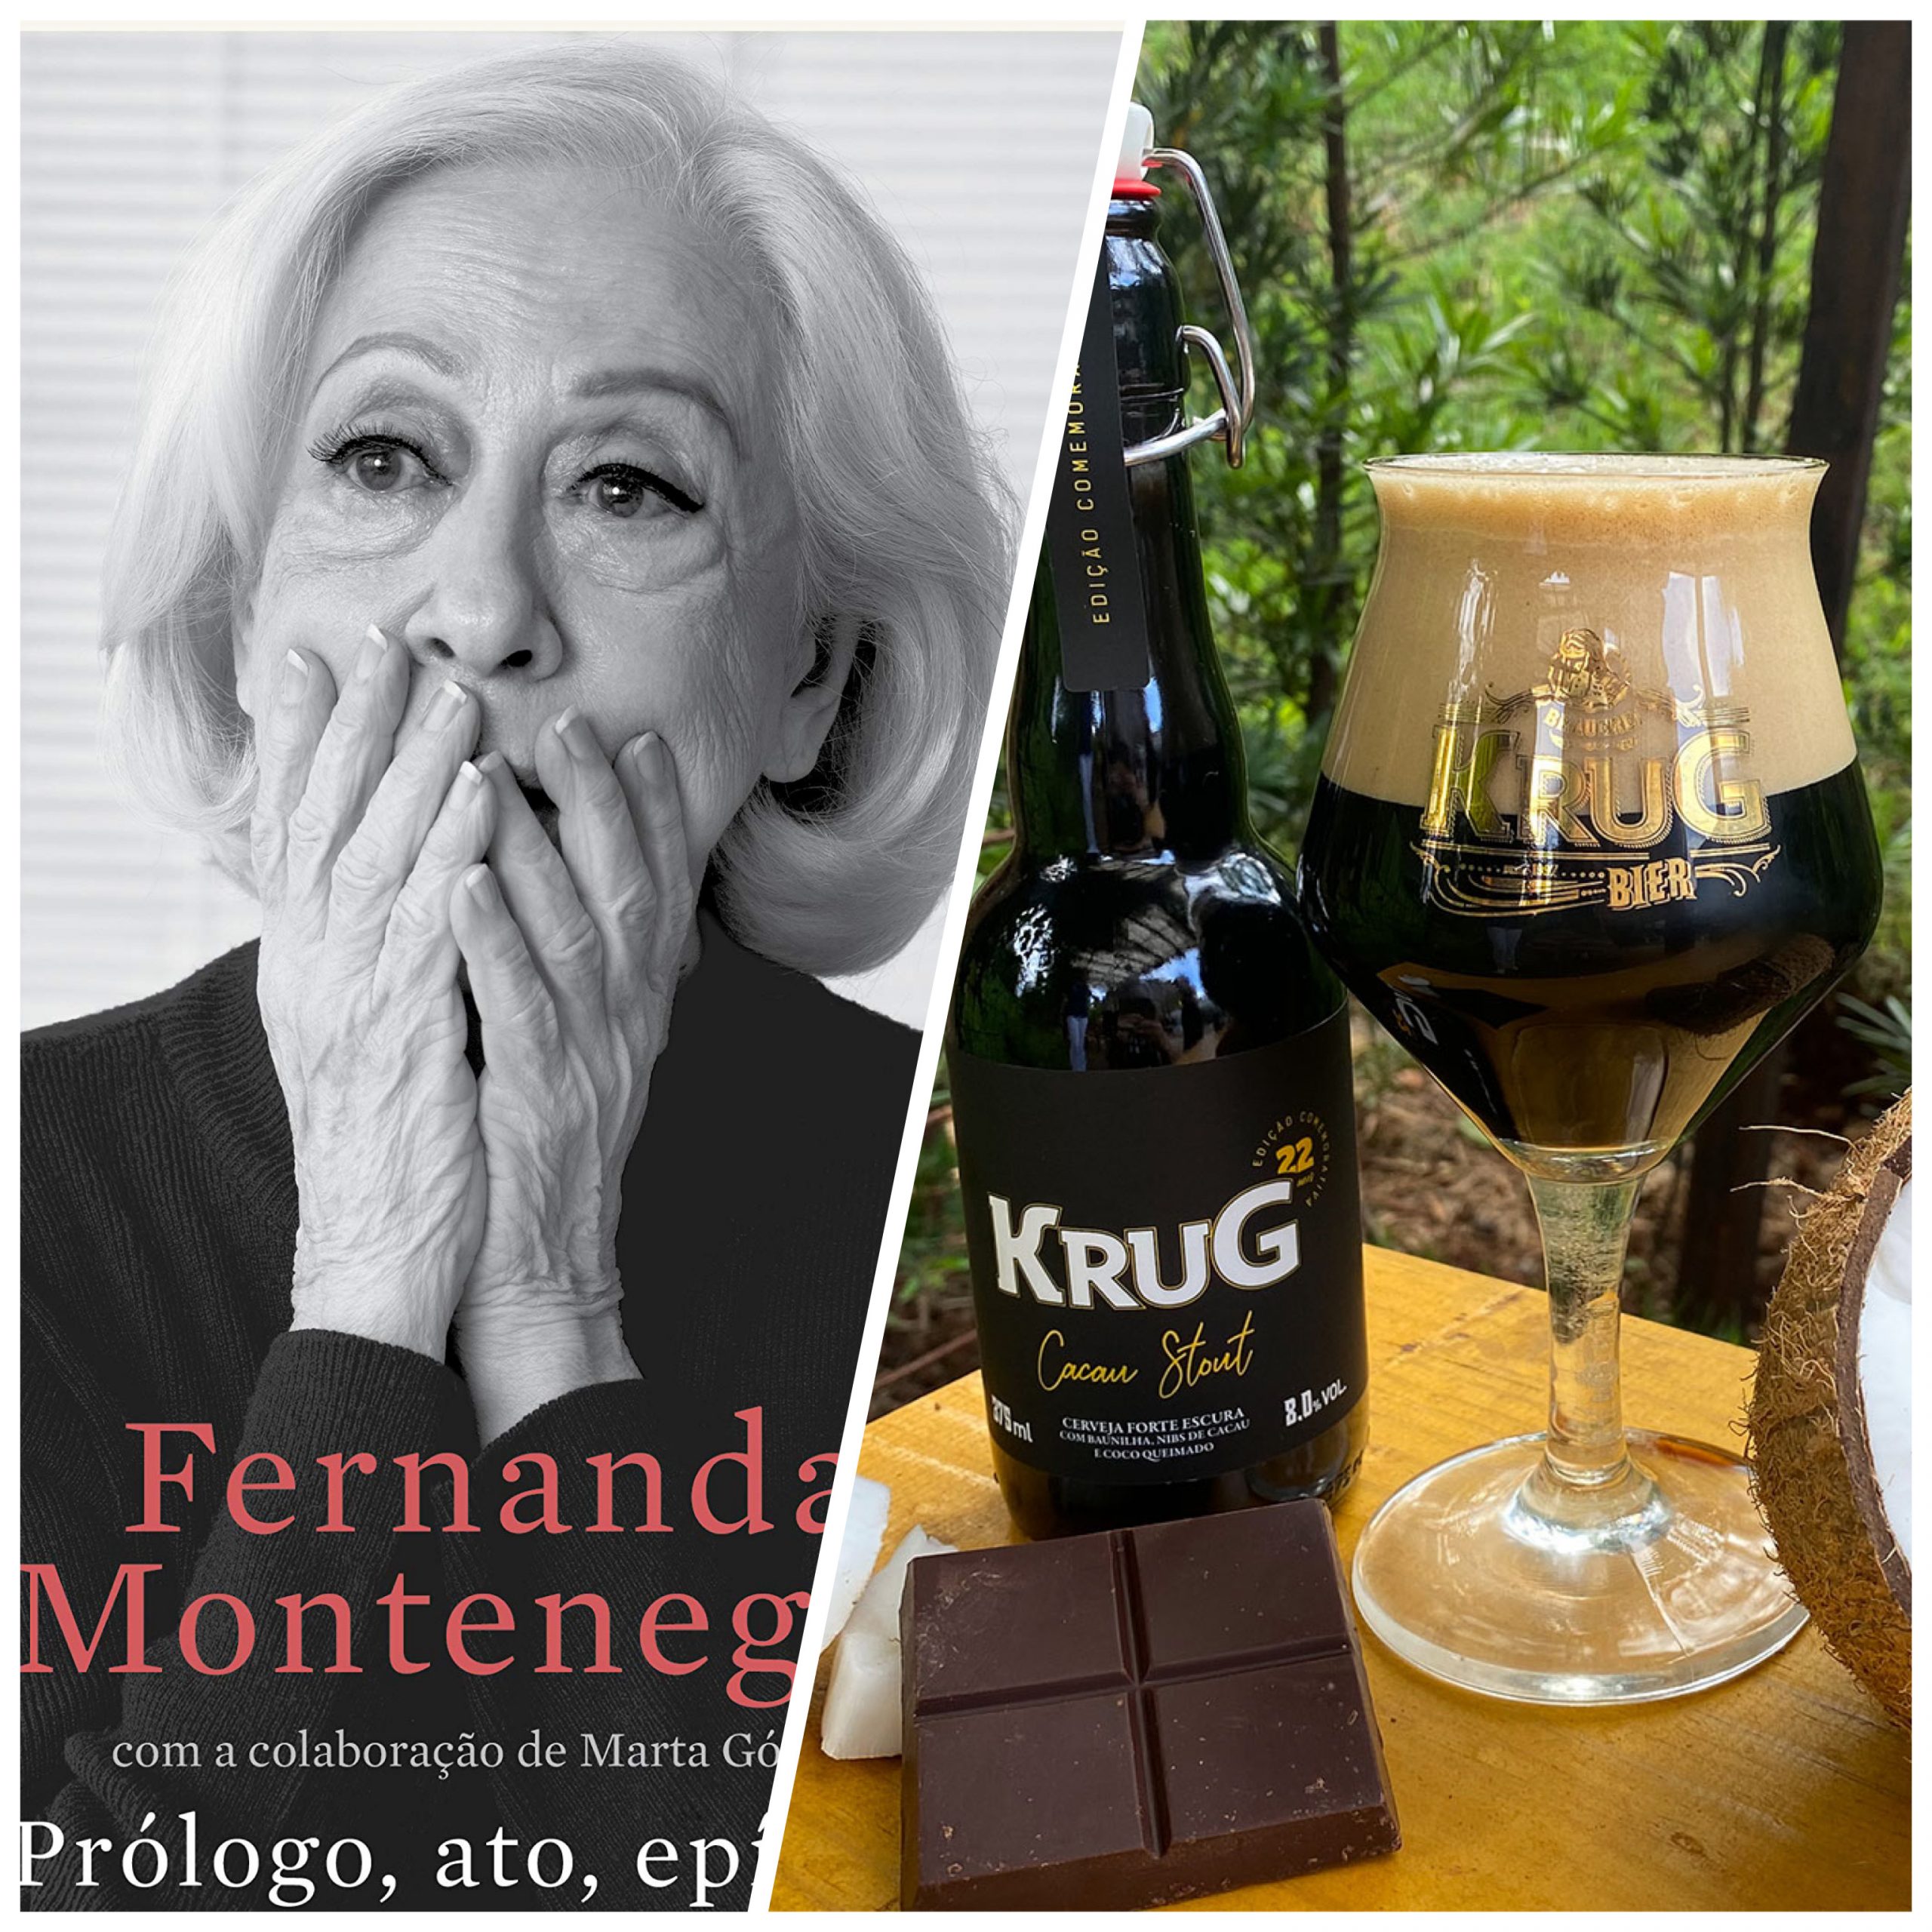 Livro de Fernanda Montenegro e cerveja especial da Krug estao no desafio da leitura do mes de fevereiro